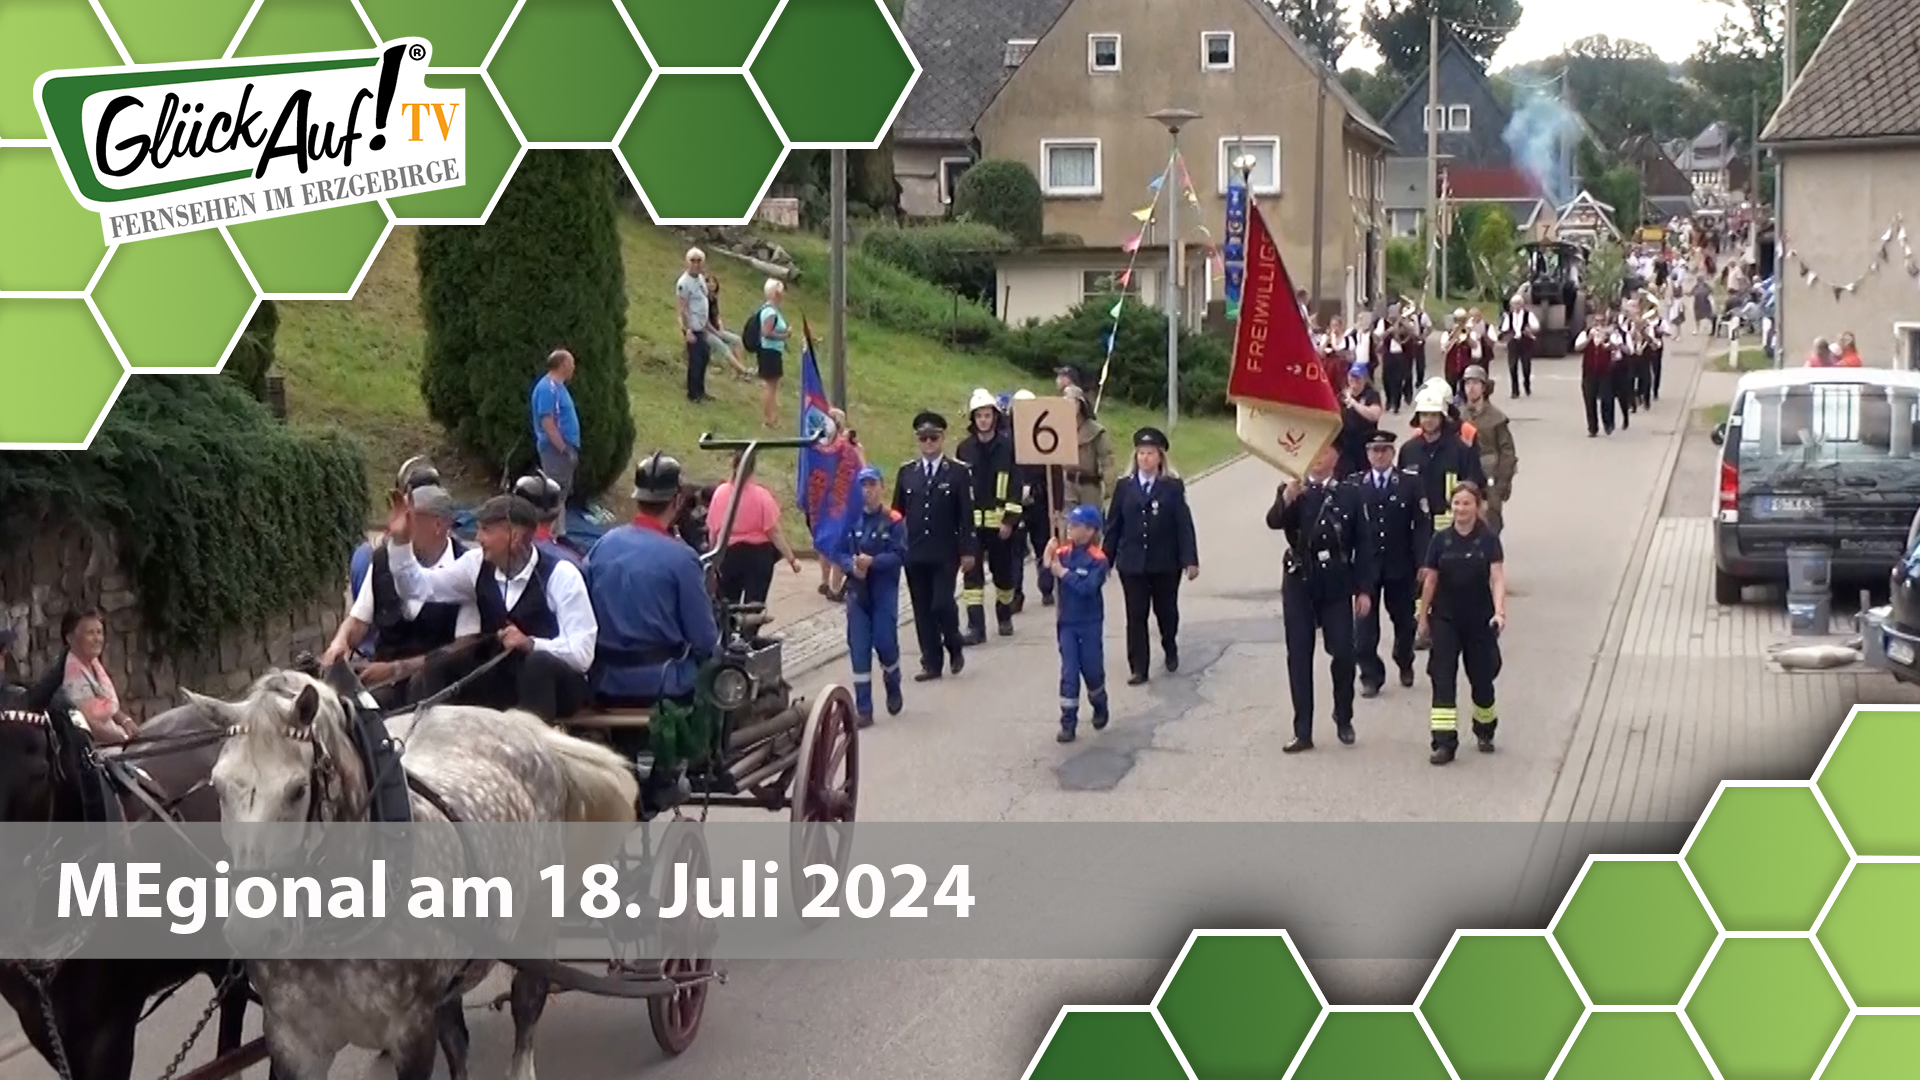 MEgional am 18. Juni 2024 mit dem 700 jährigen Jubiläum in Dorfchemnitz